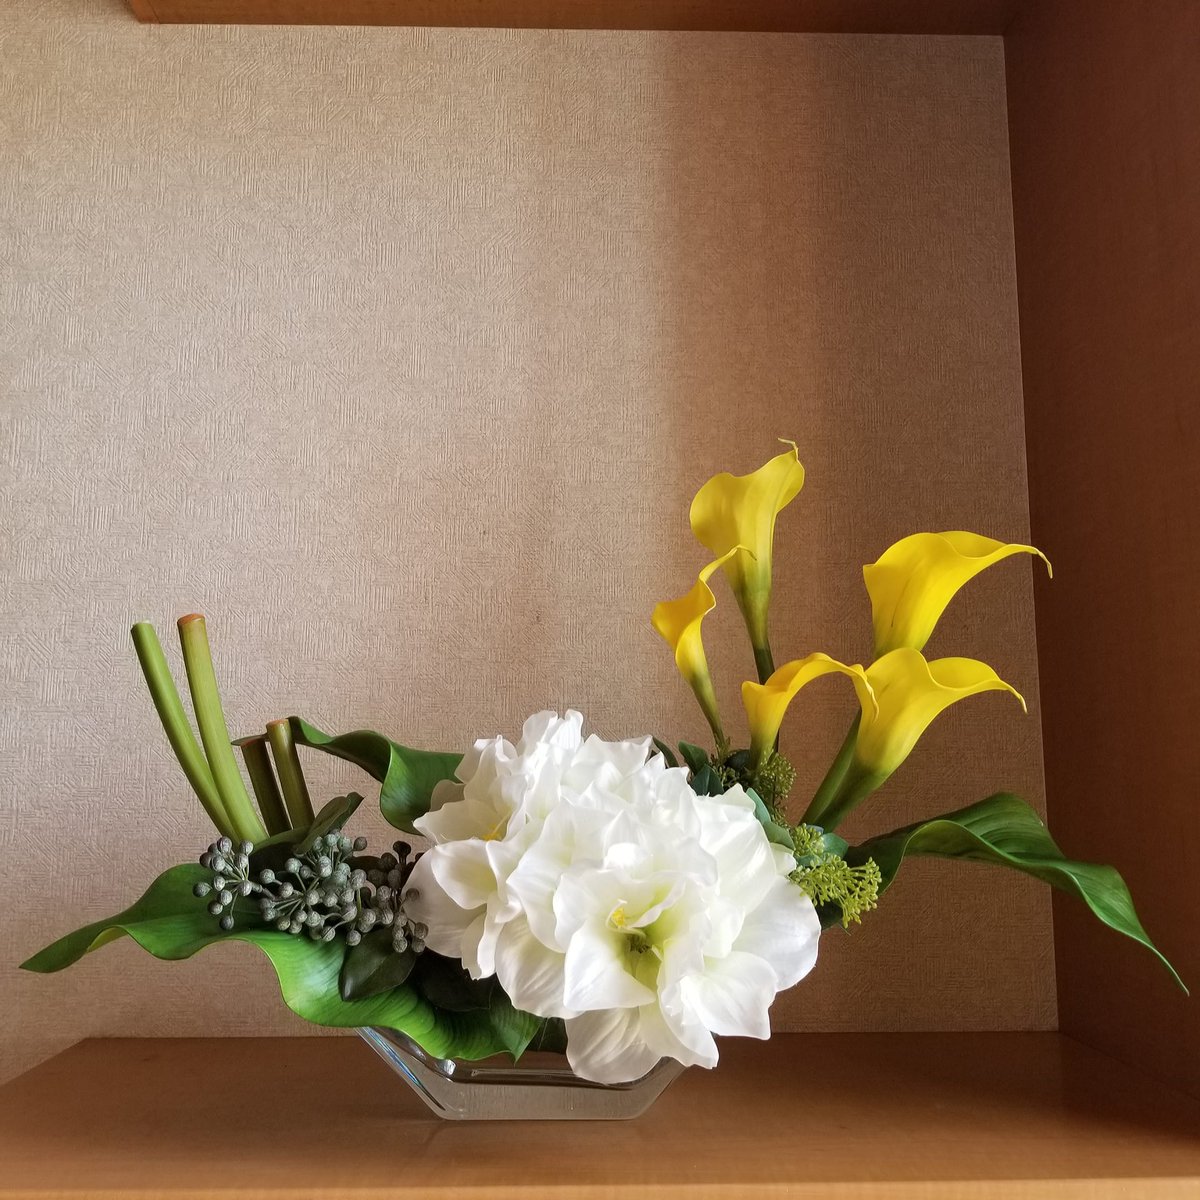 『Amaryllis&Calla lily Arrangement🏵️』

玄関用に、オーダーアレンジメントのご注文をいただきました😊
ガラスのベースでこれからの季節を涼しげに…✨
オーダーありがとうございました💛
#artificialflowers
#アーティフィシャルフラワー
#フラワーアレンジメント
#造花
#オーダーアレンジメント